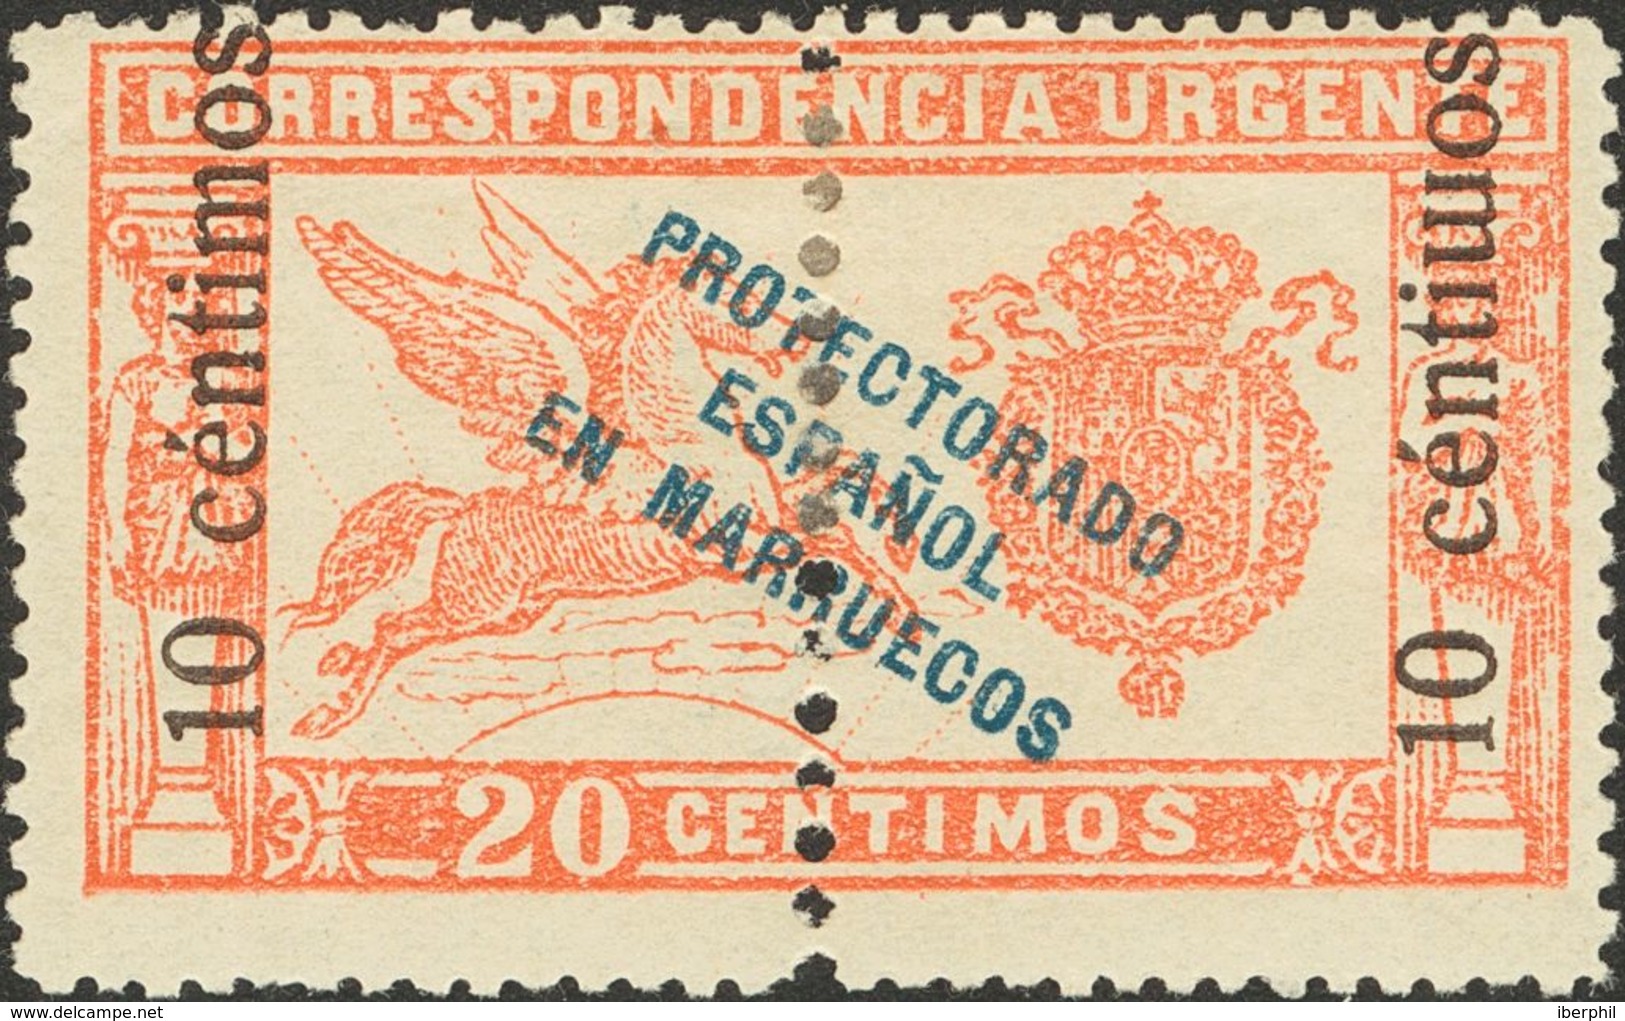 Marruecos. * 66hea 1920. 10 Cts Sobre 20 Cts Rojo. Variedad "M" DE CENTIMOS INVERTIDA. MAGNIFICO. 2013 105. - Marocco Spagnolo